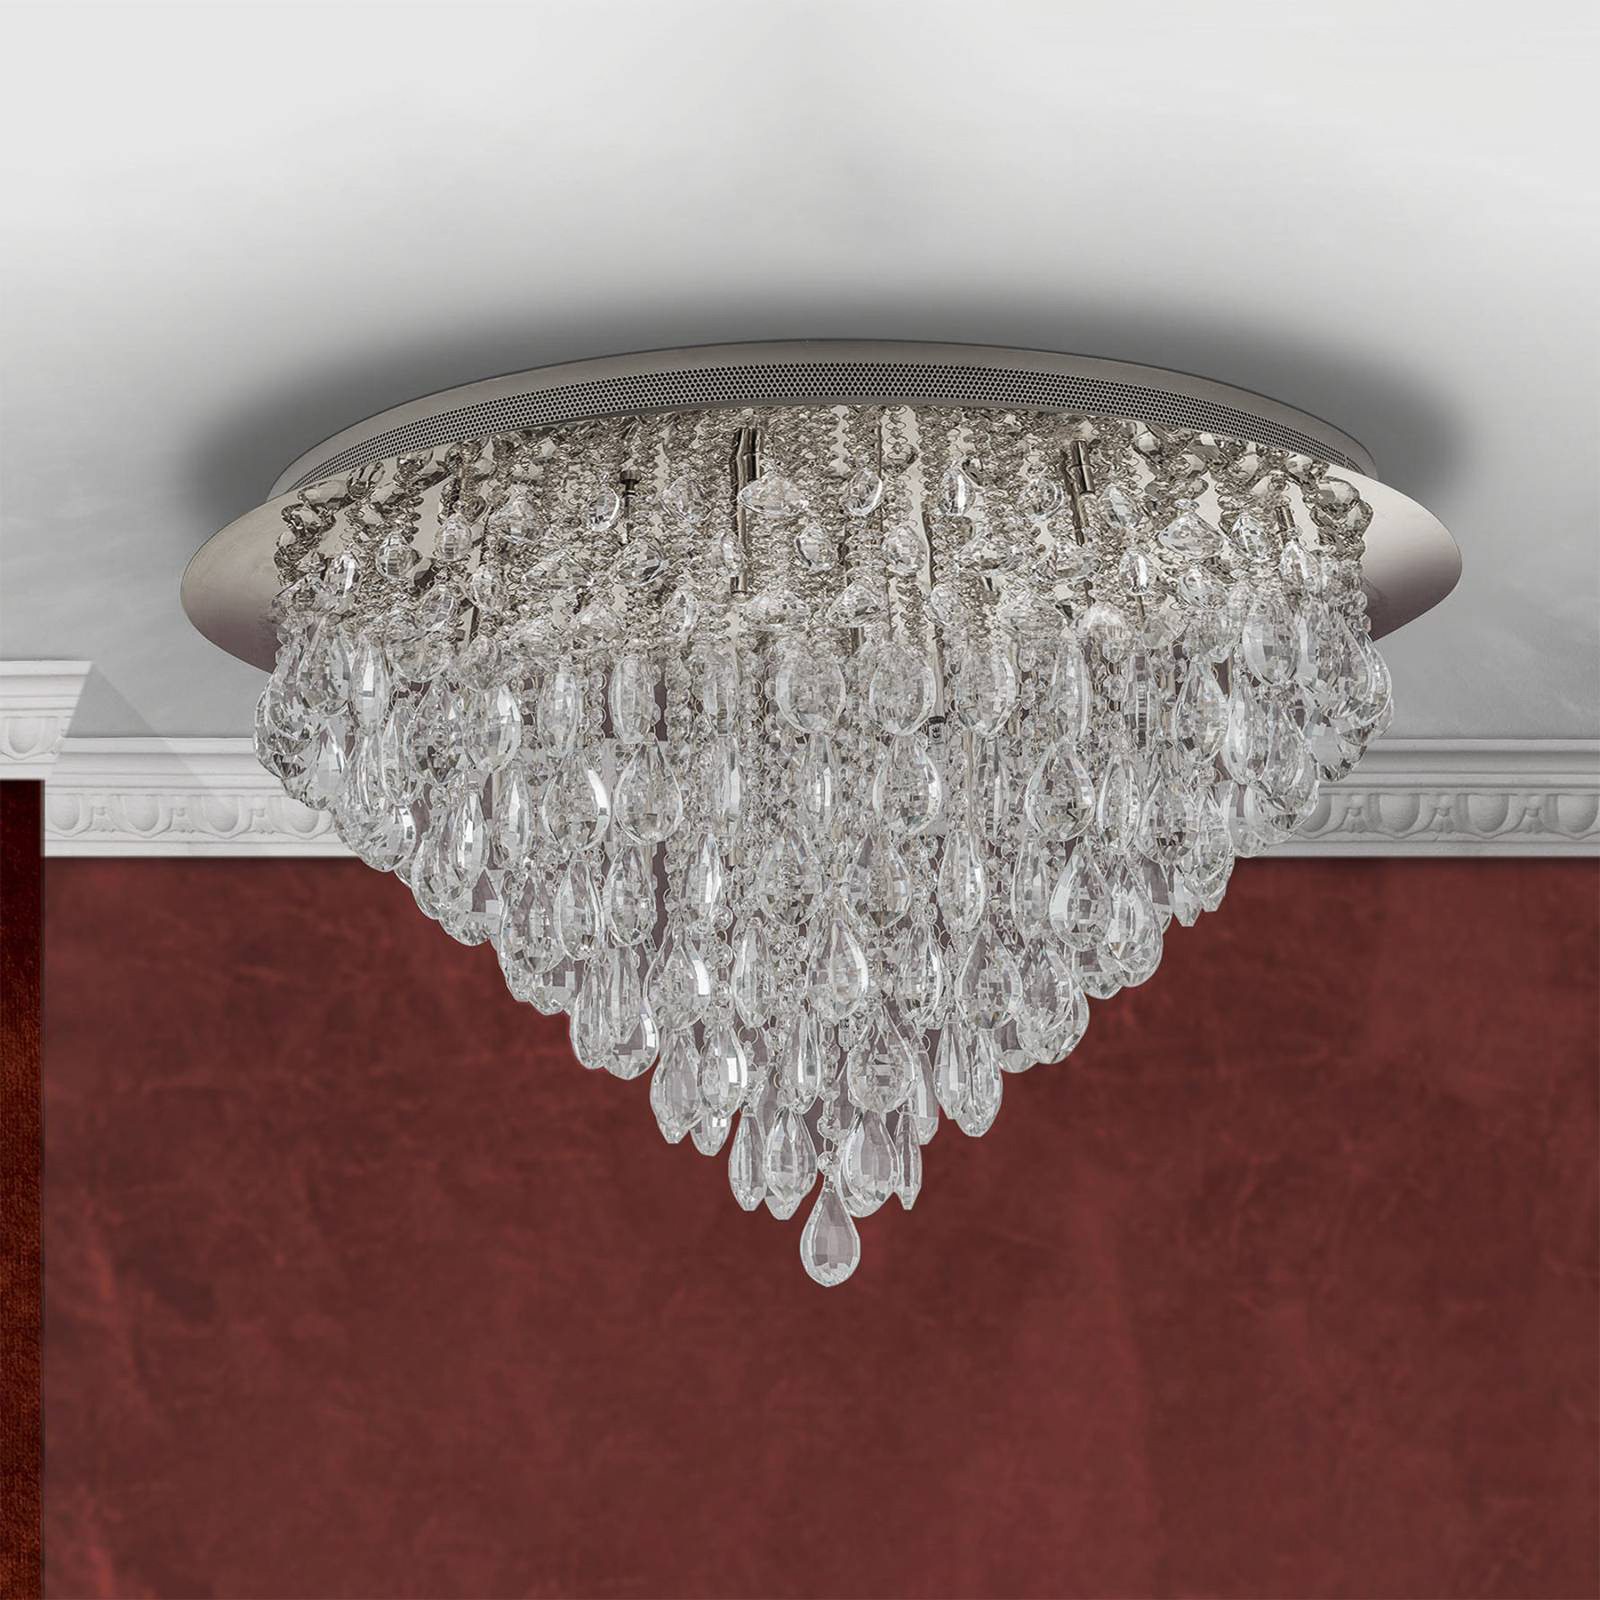 Celeste ceiling lamp with K9 crystals, Ø75cm chrome